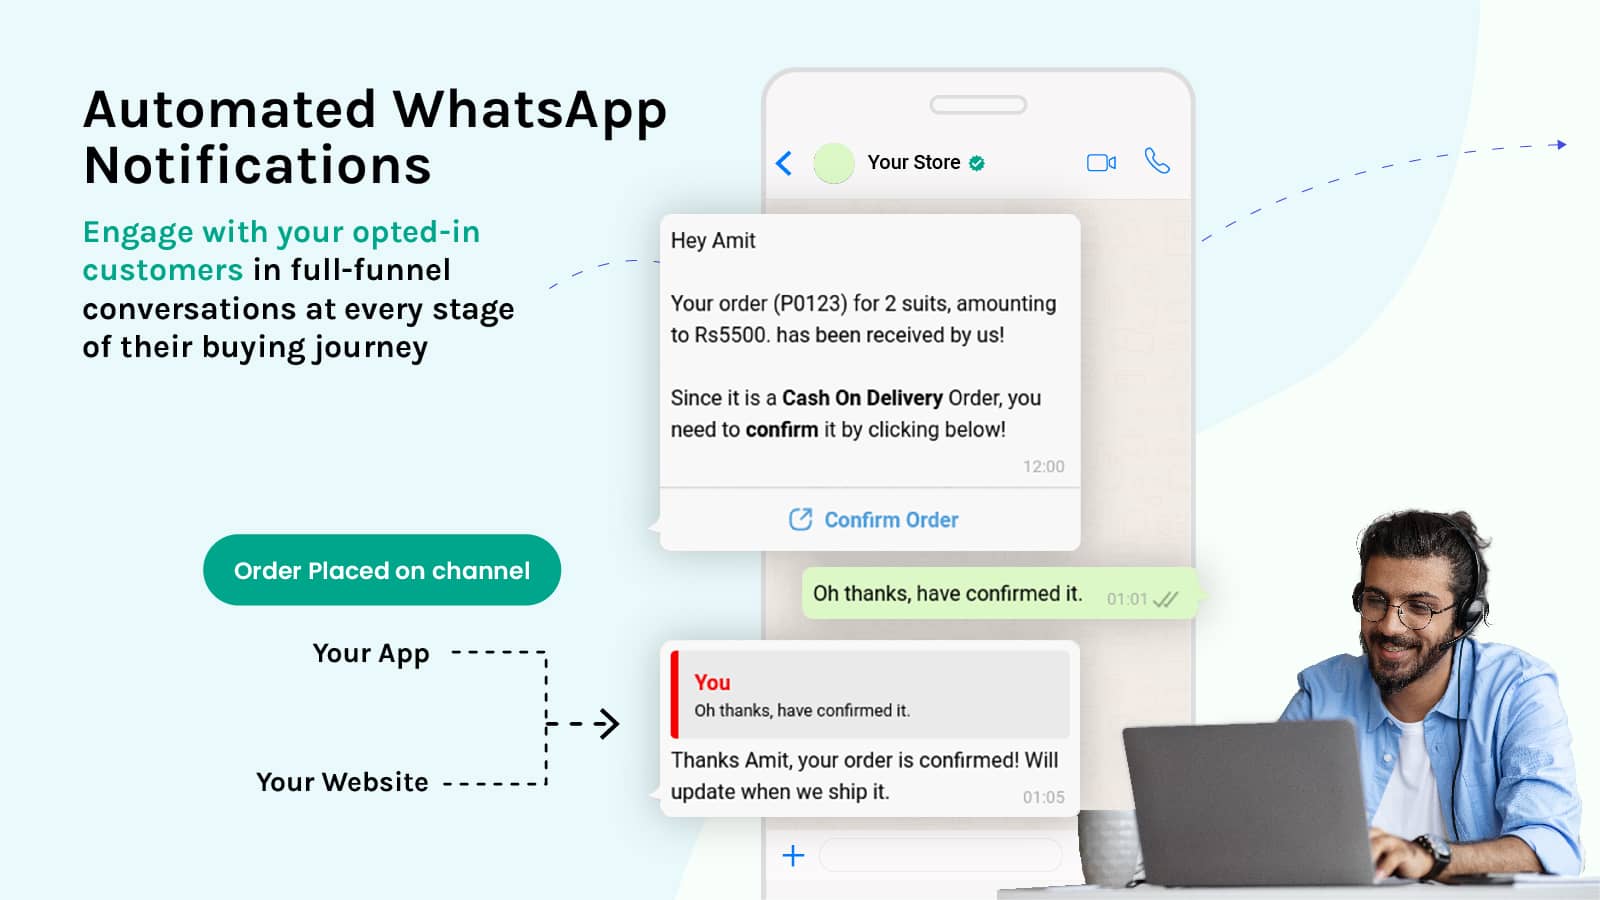 Automated WhatsApp notifications